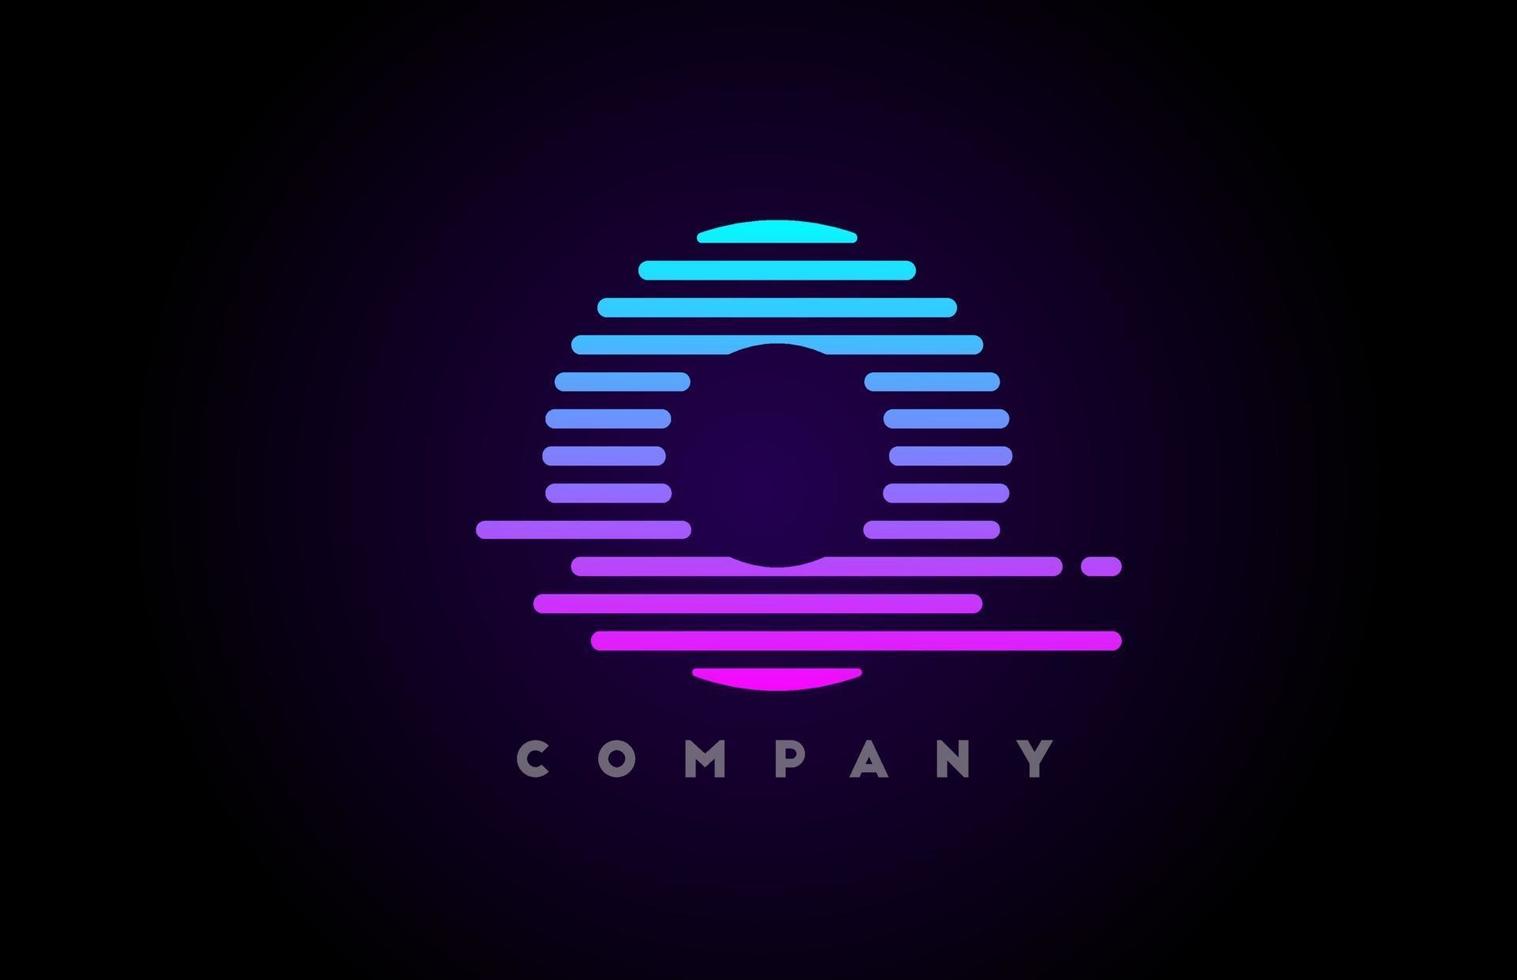 alfabet letterpictogram logo voor zaken en bedrijf. creatieve sjabloon vector